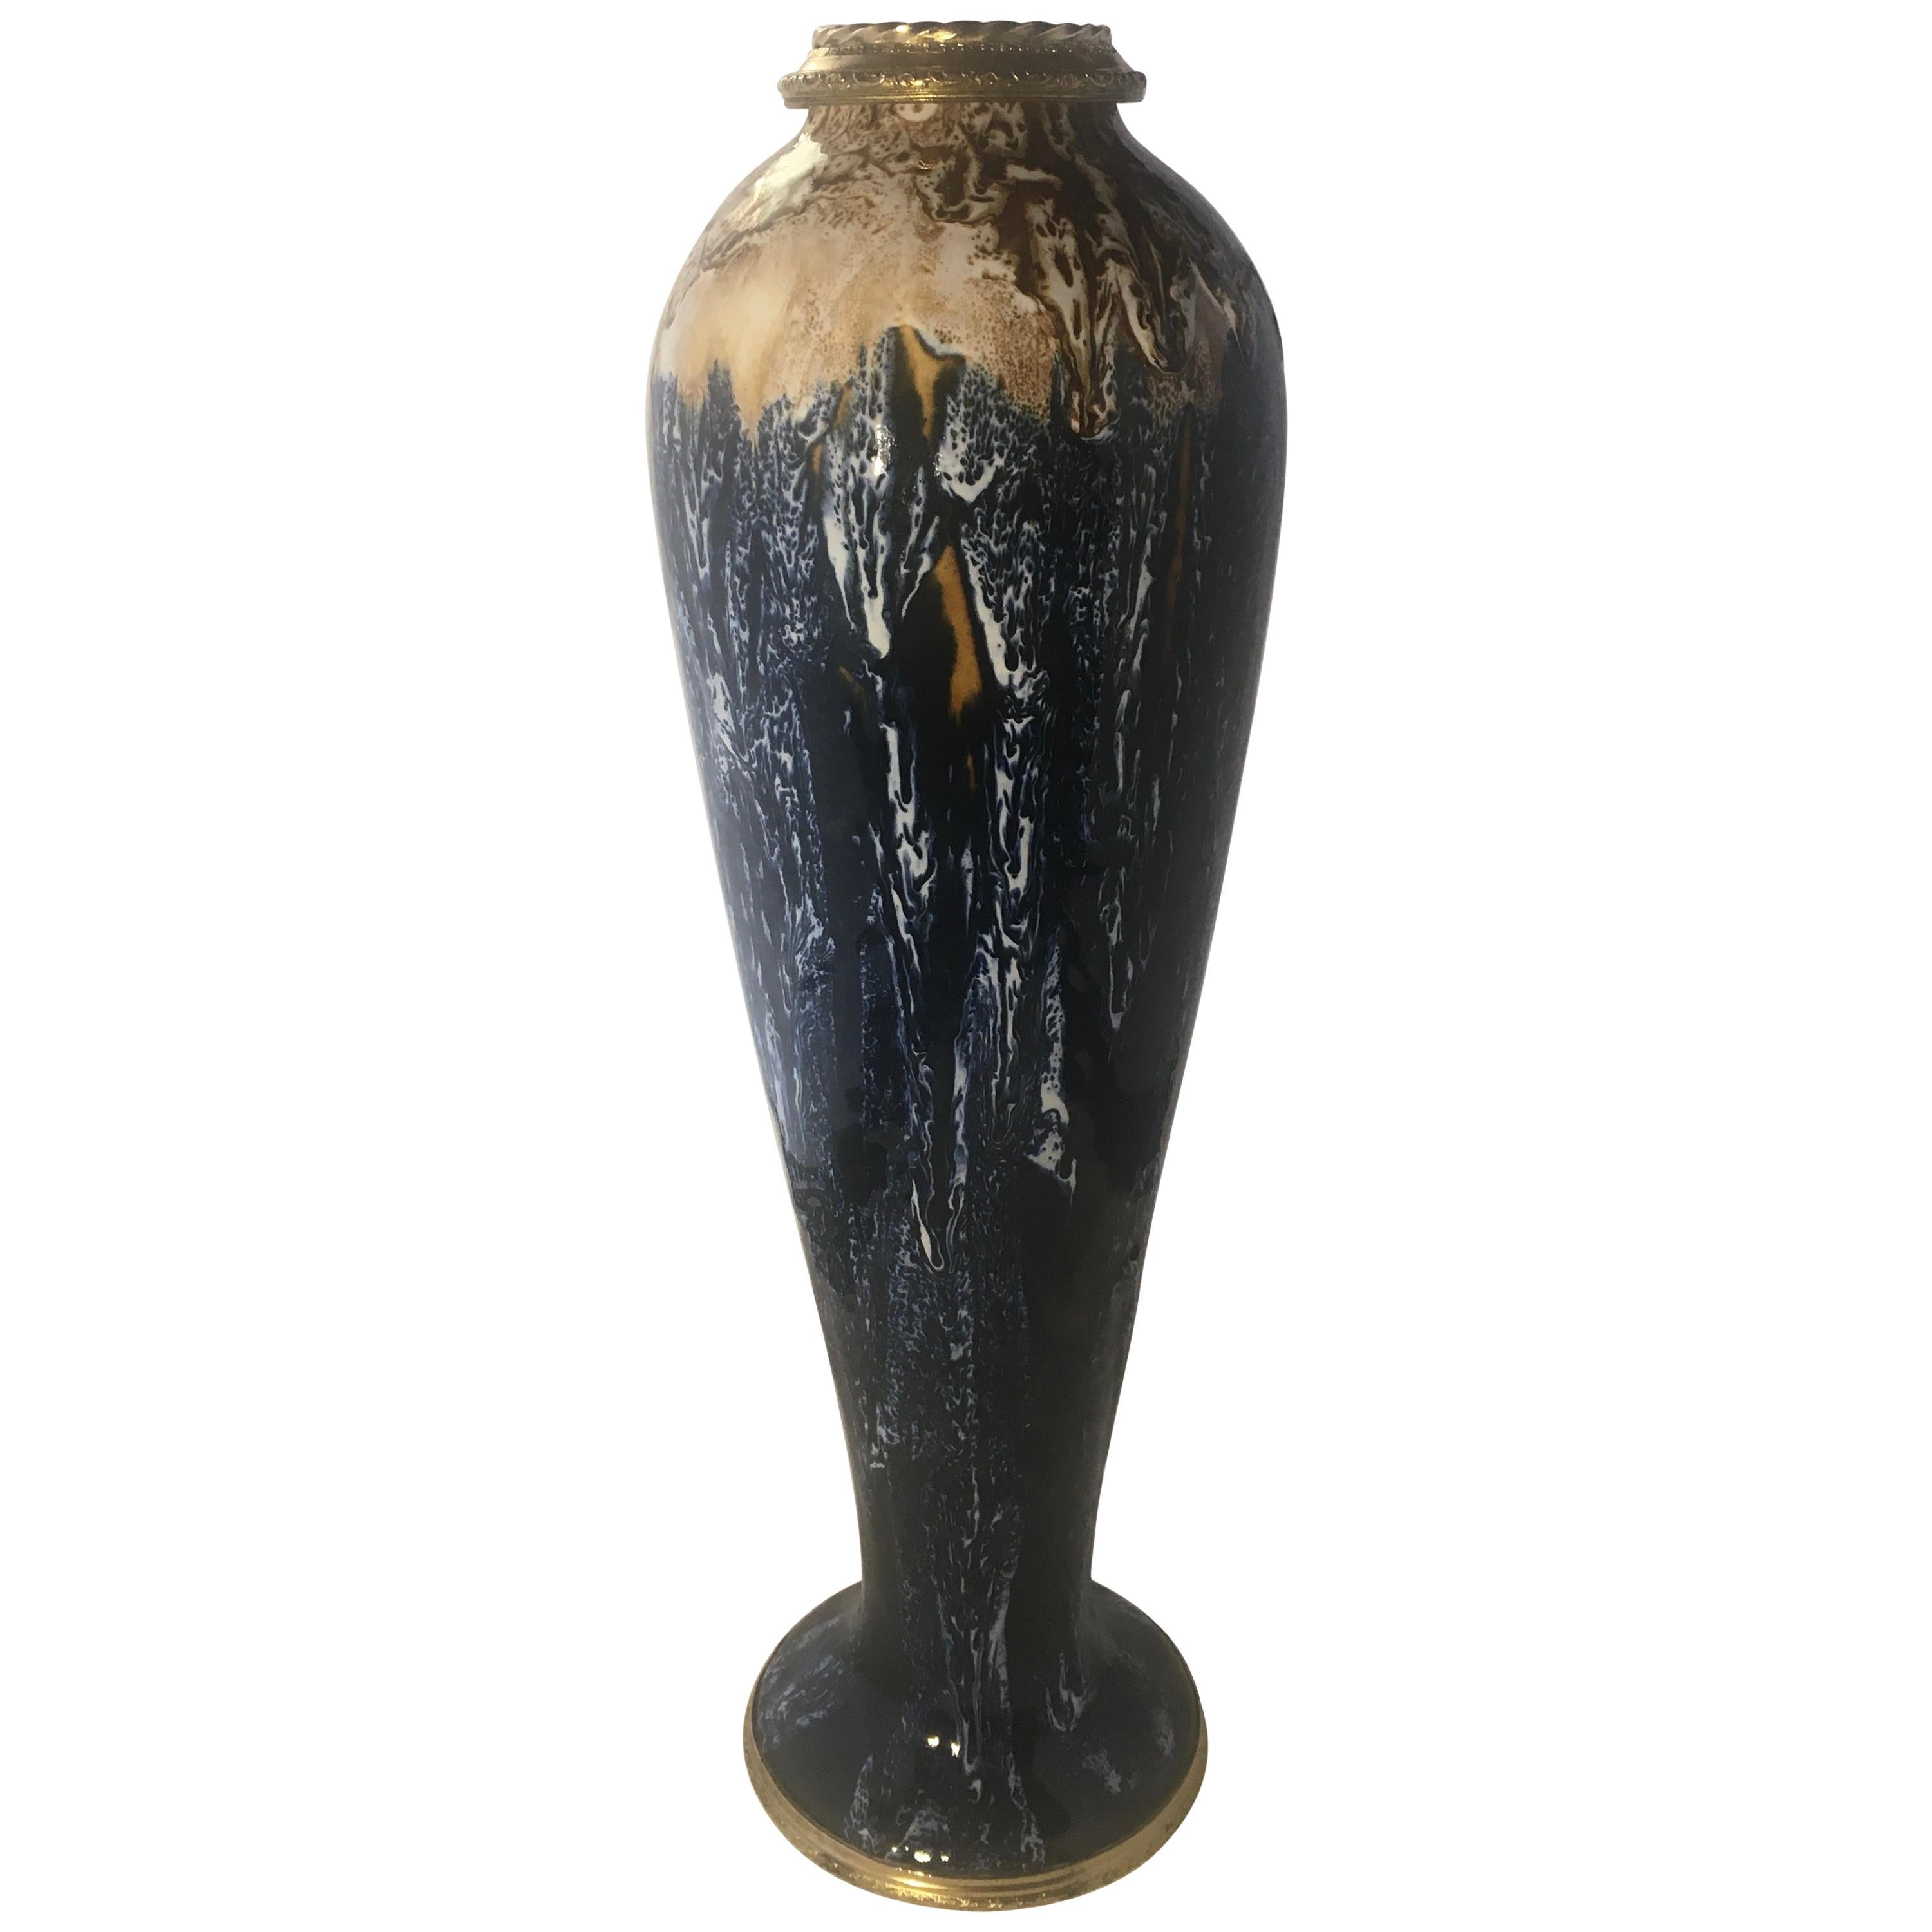 Charles Catteau for Boch La Louvière Art Deco Enamel Ceramic Flower Vase, Signed